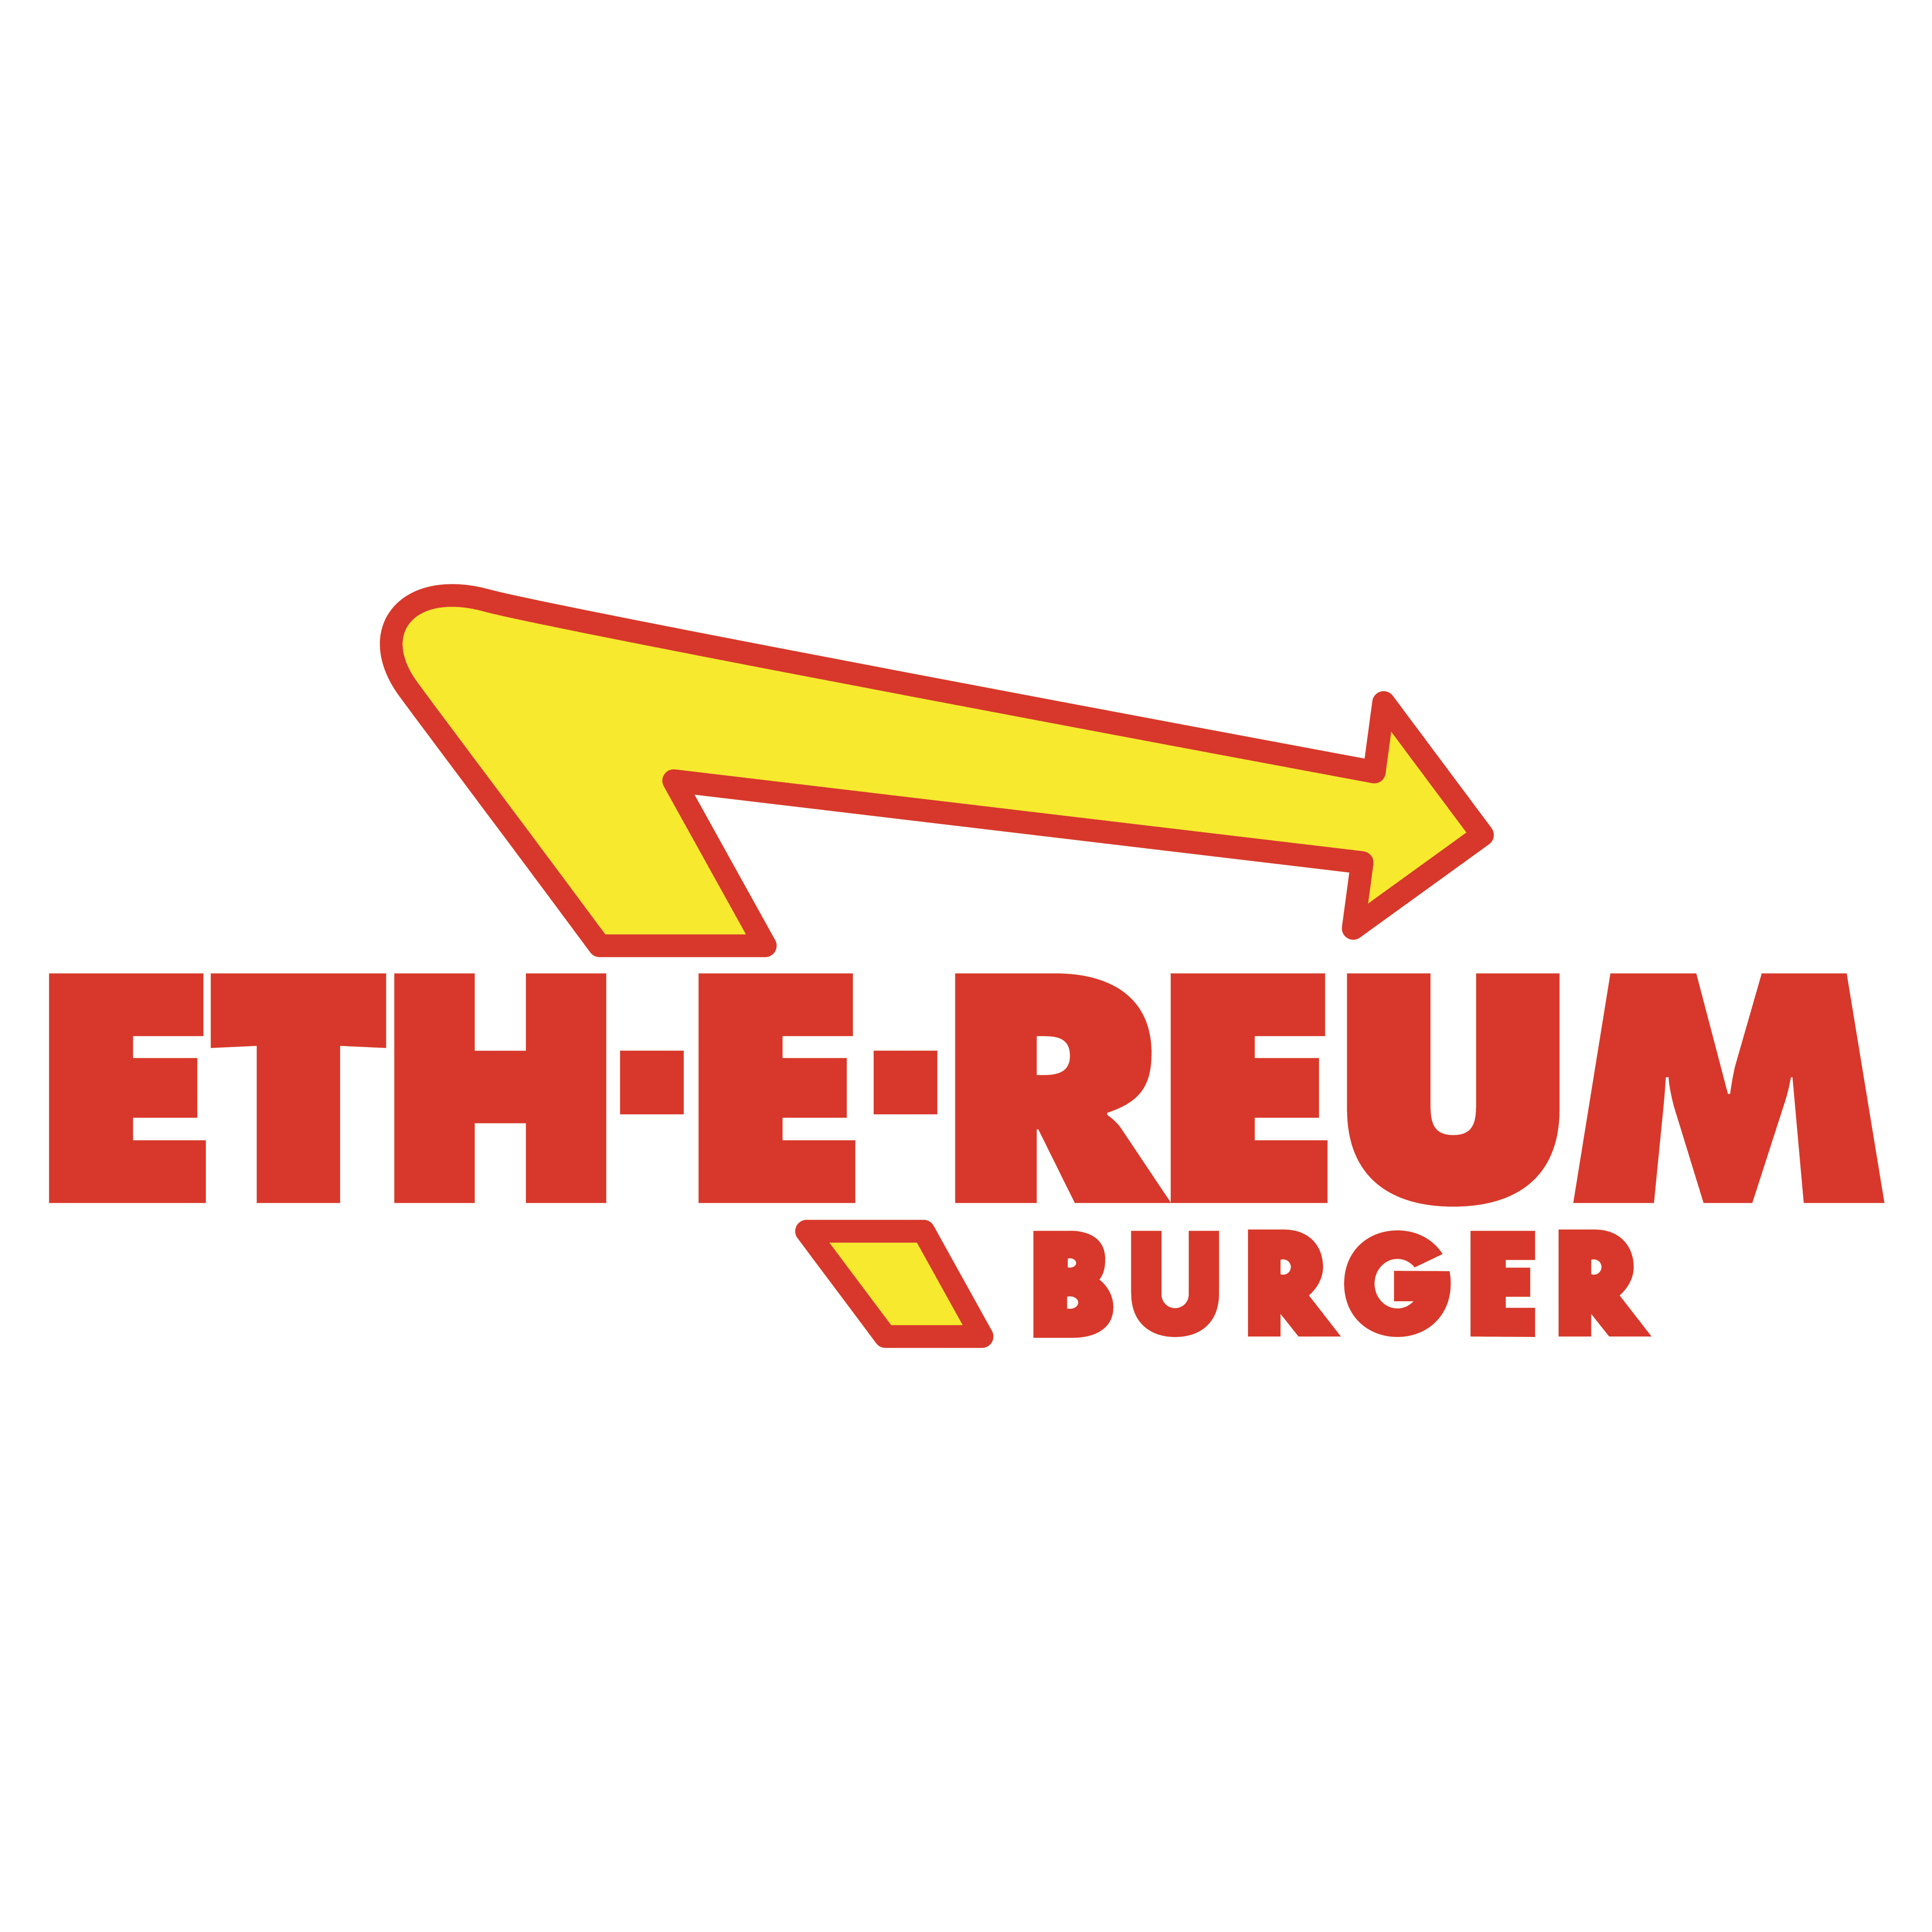 Eth-E-Reum Burger